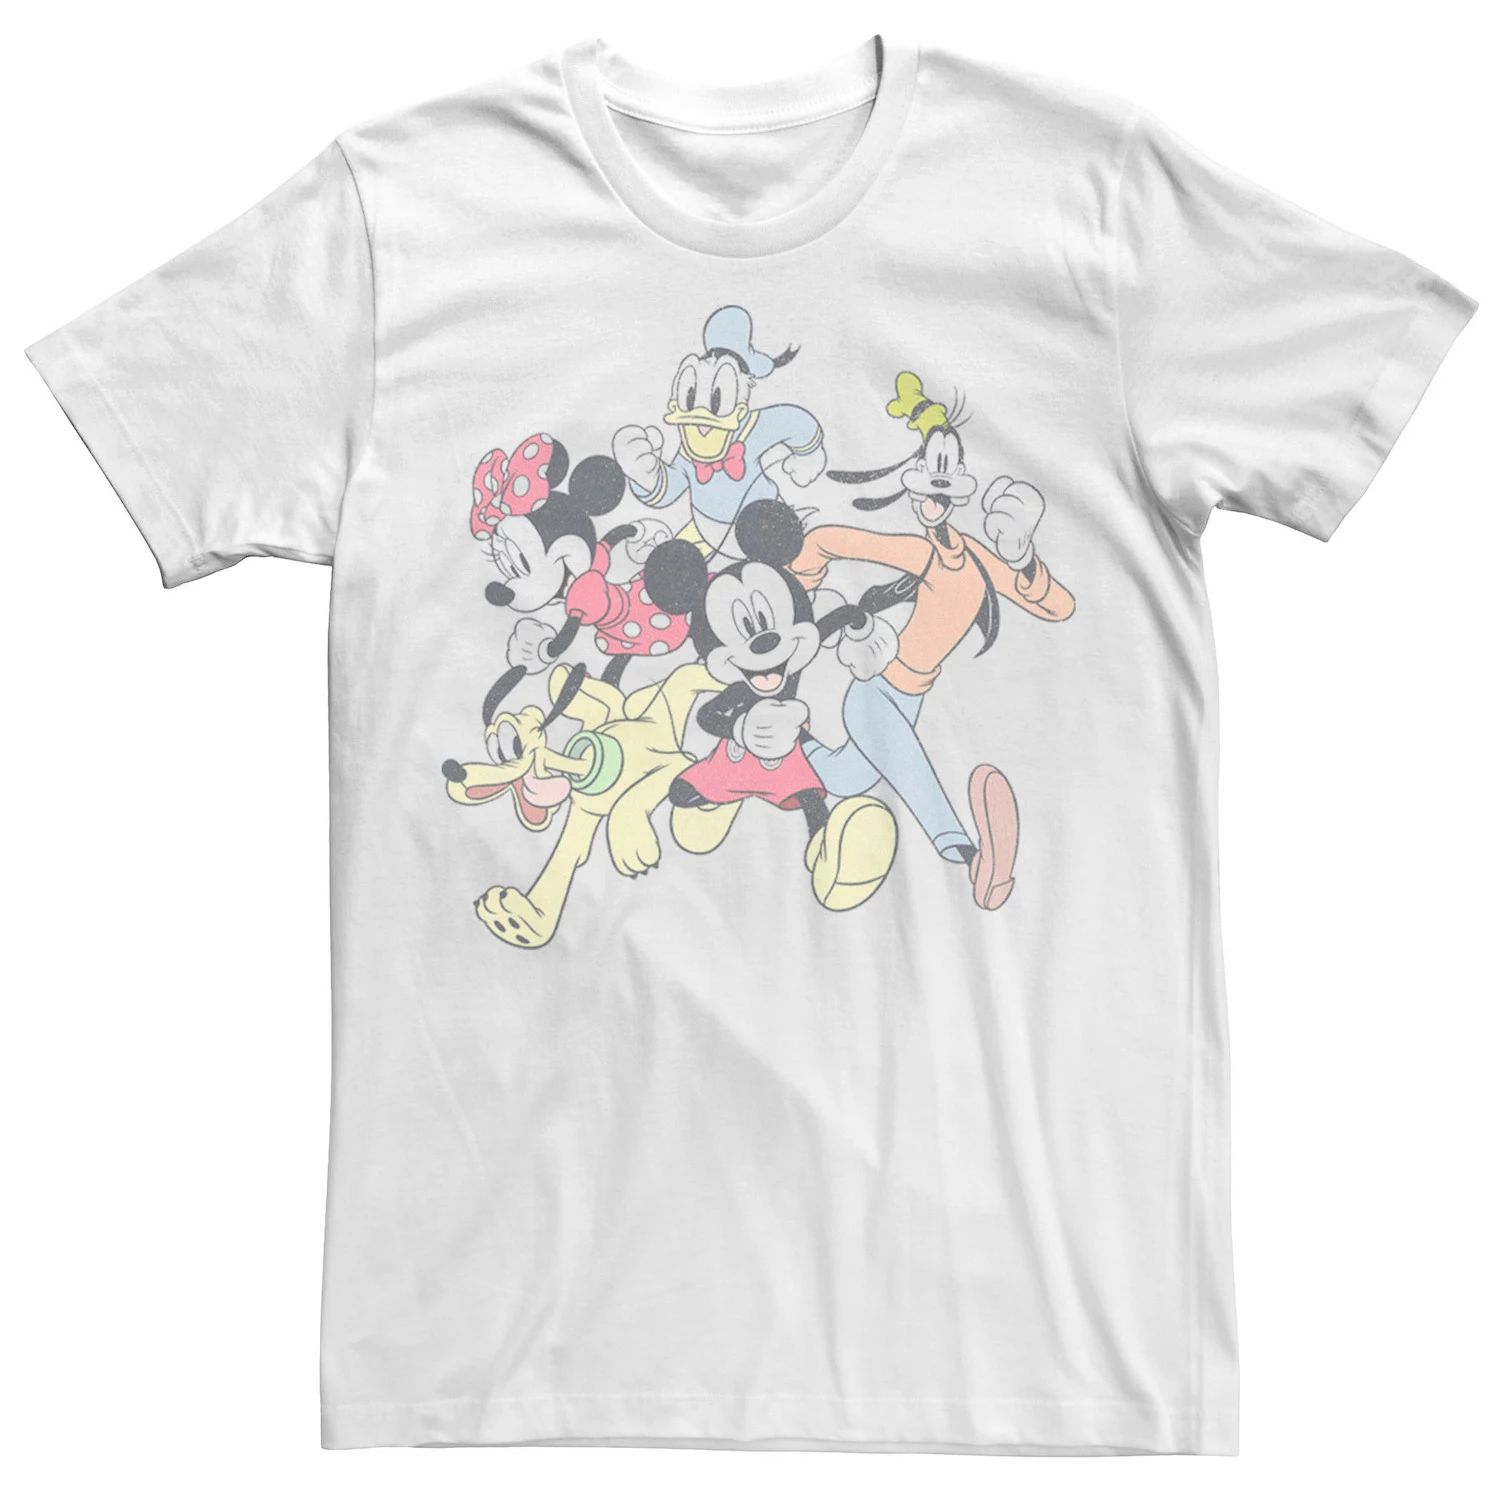 Мужская футболка с портретом для бега «Mickey & Friends Group Shot» Disney мужская классическая футболка mickey and friends group shot disney